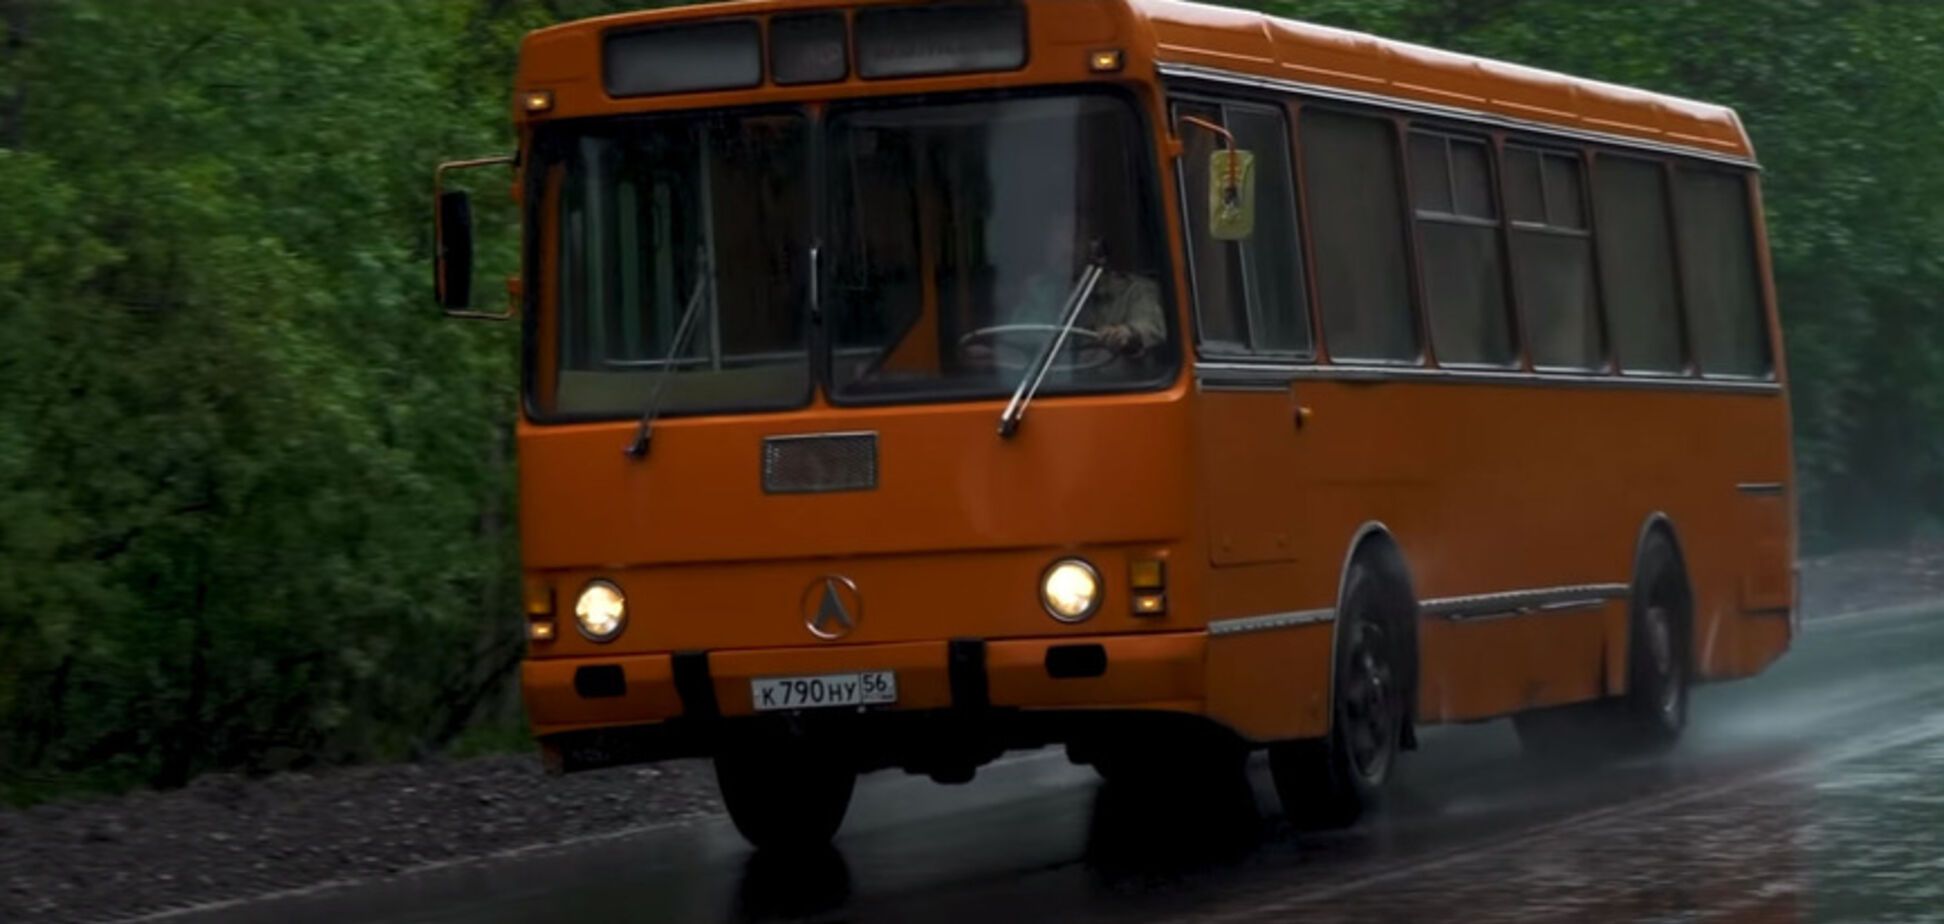 Український ЛАЗ-42021 був досить рідкісним транспортним засобом